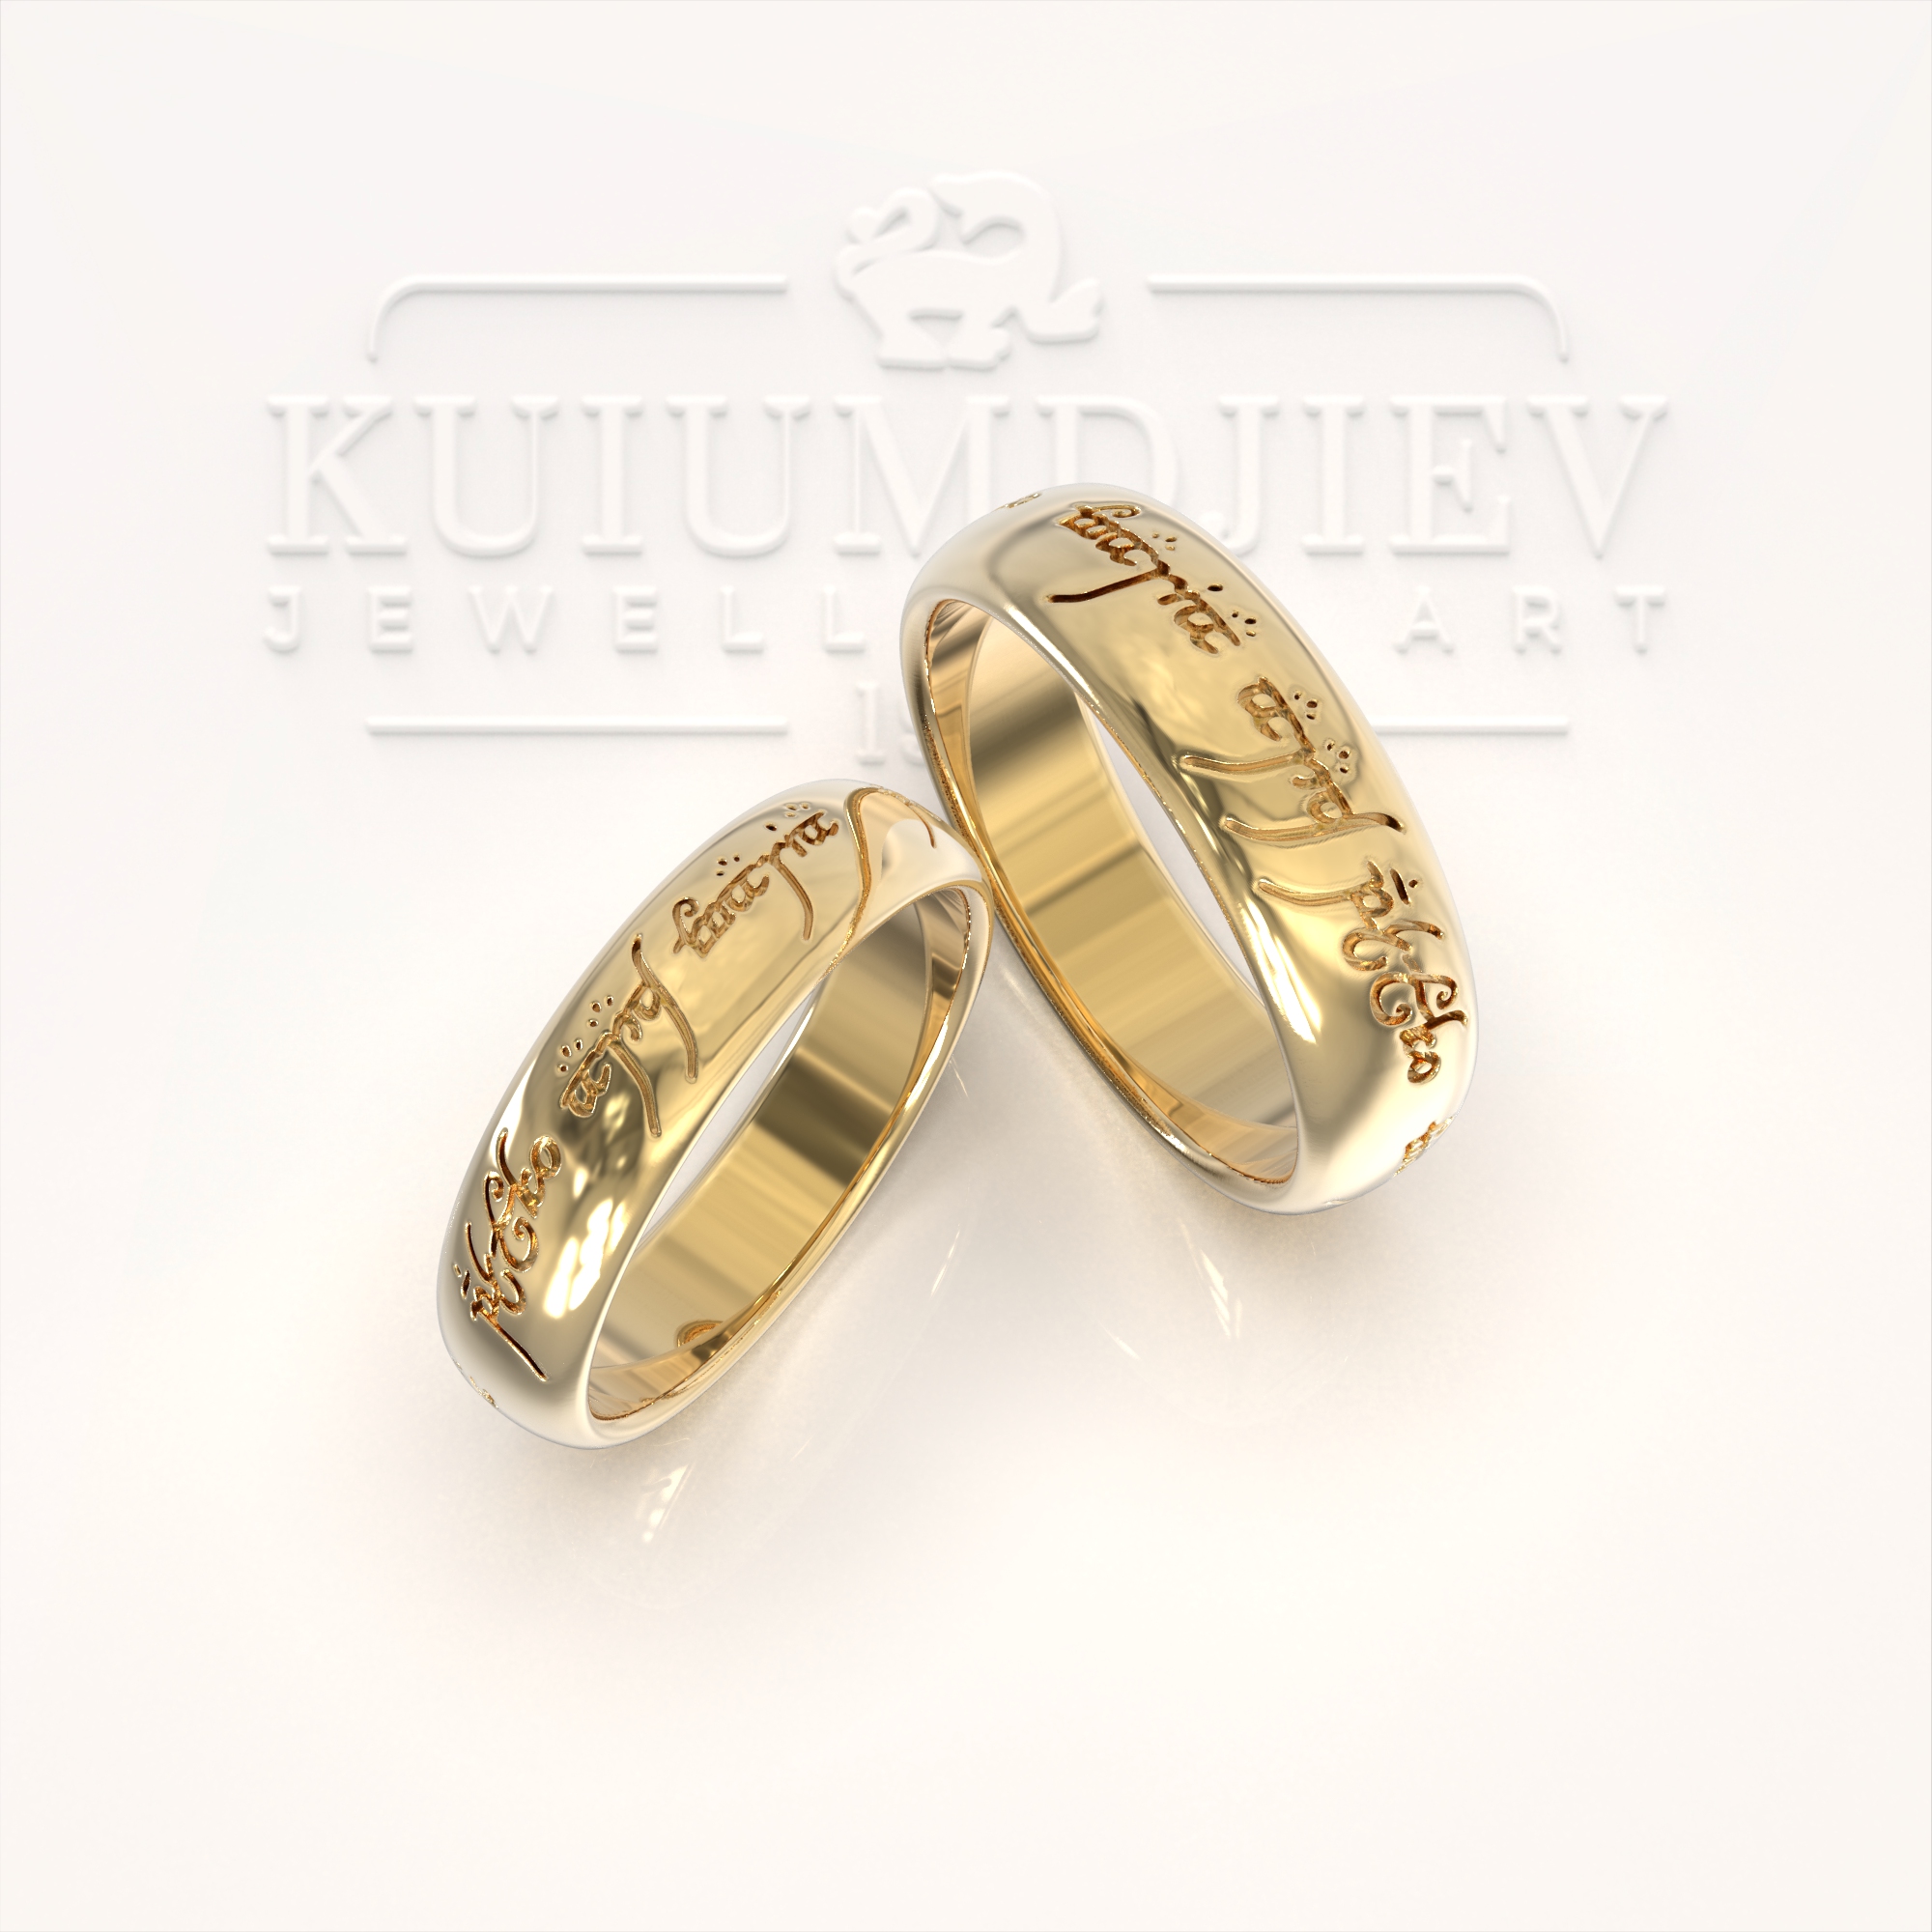 Wedding rings - custom order